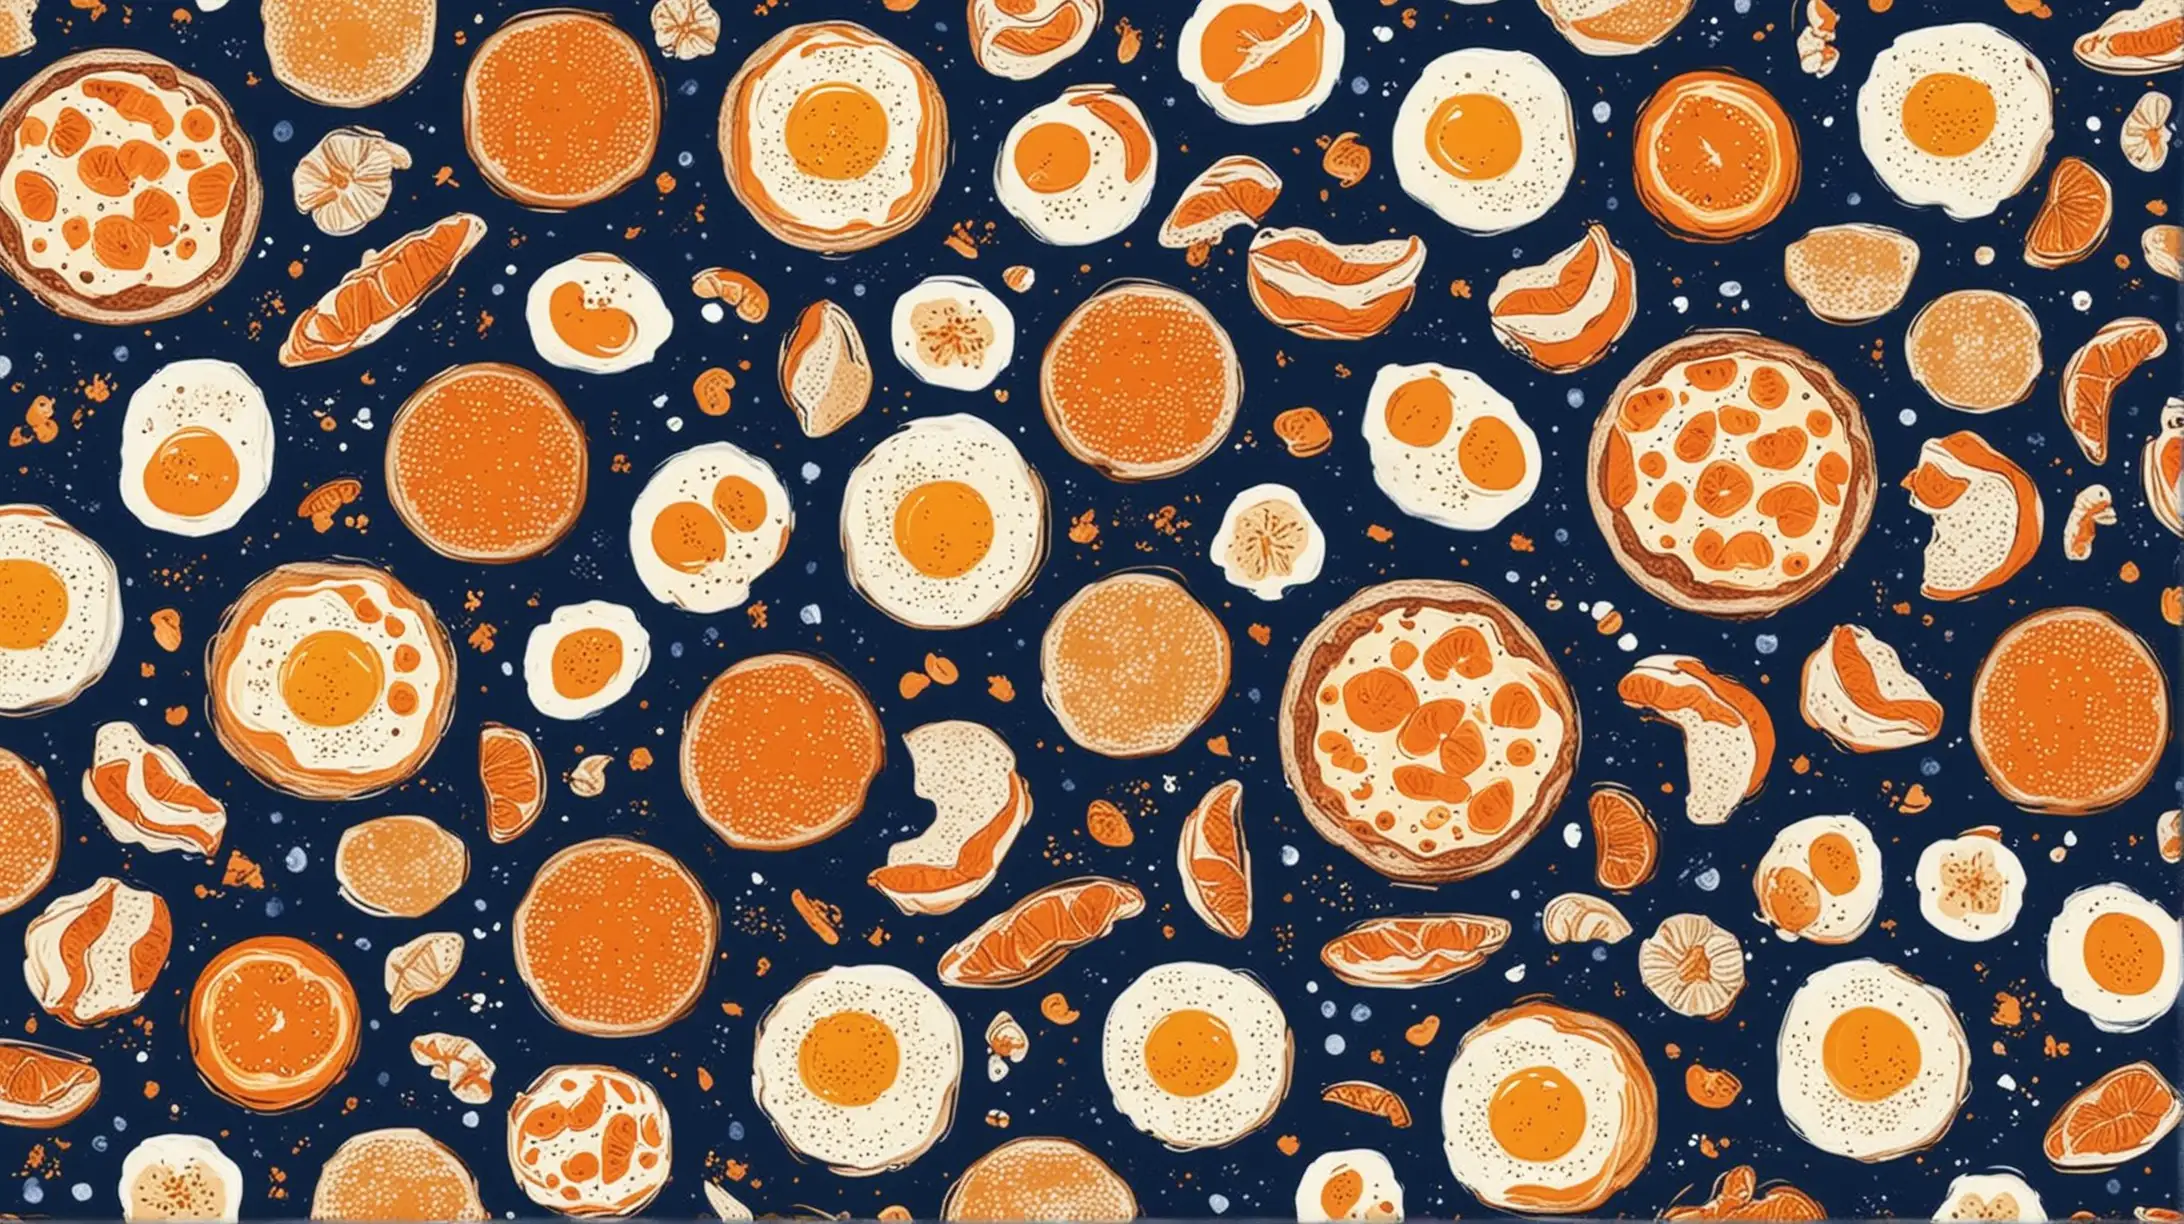 breakfast pattern dark blue and orange
